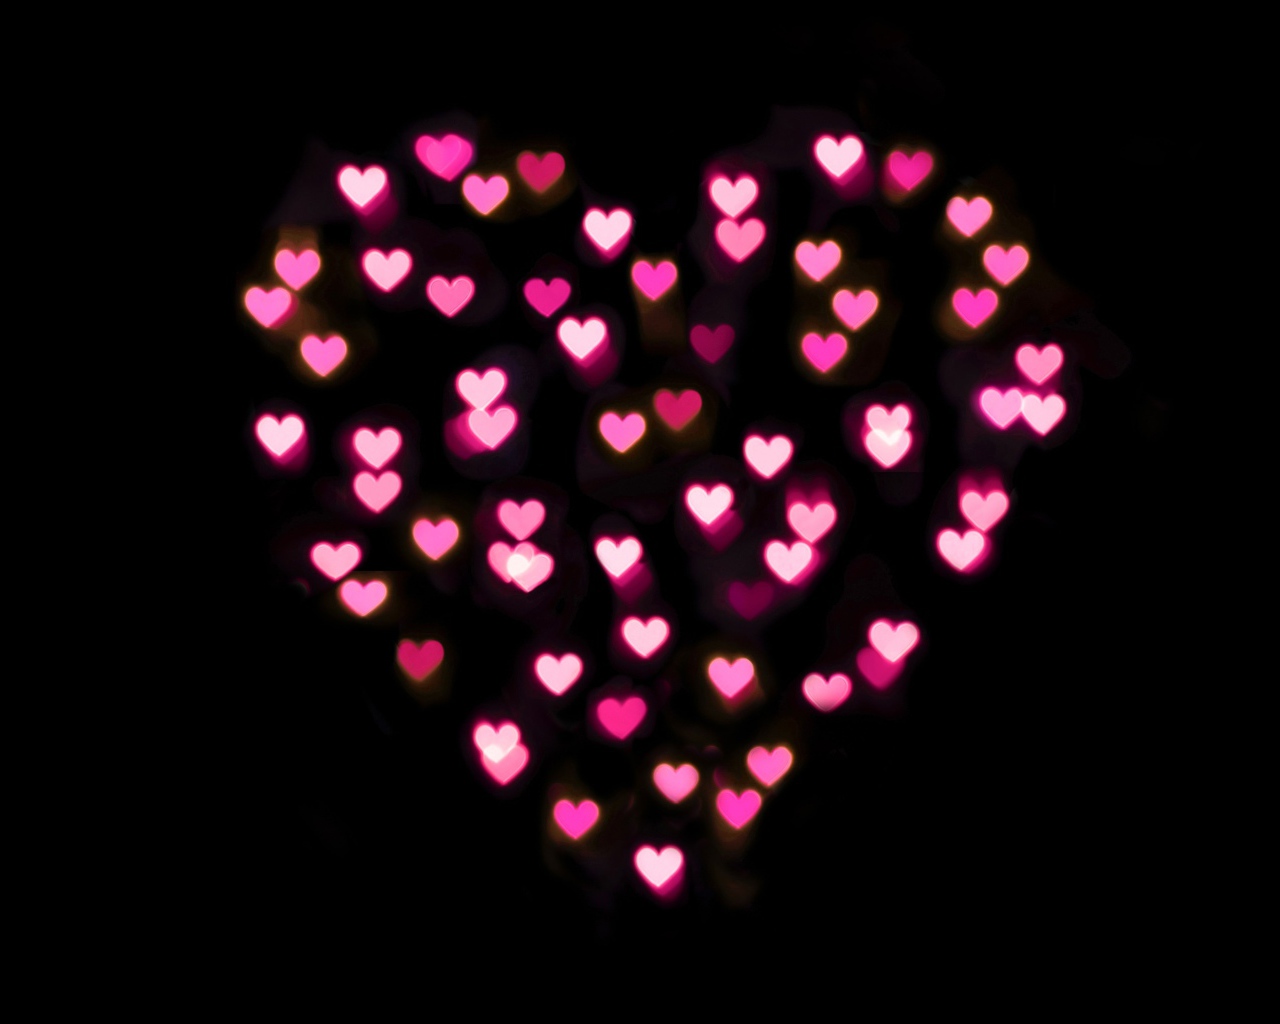 Сердце из маленьких розовых сердечек на черном фоне